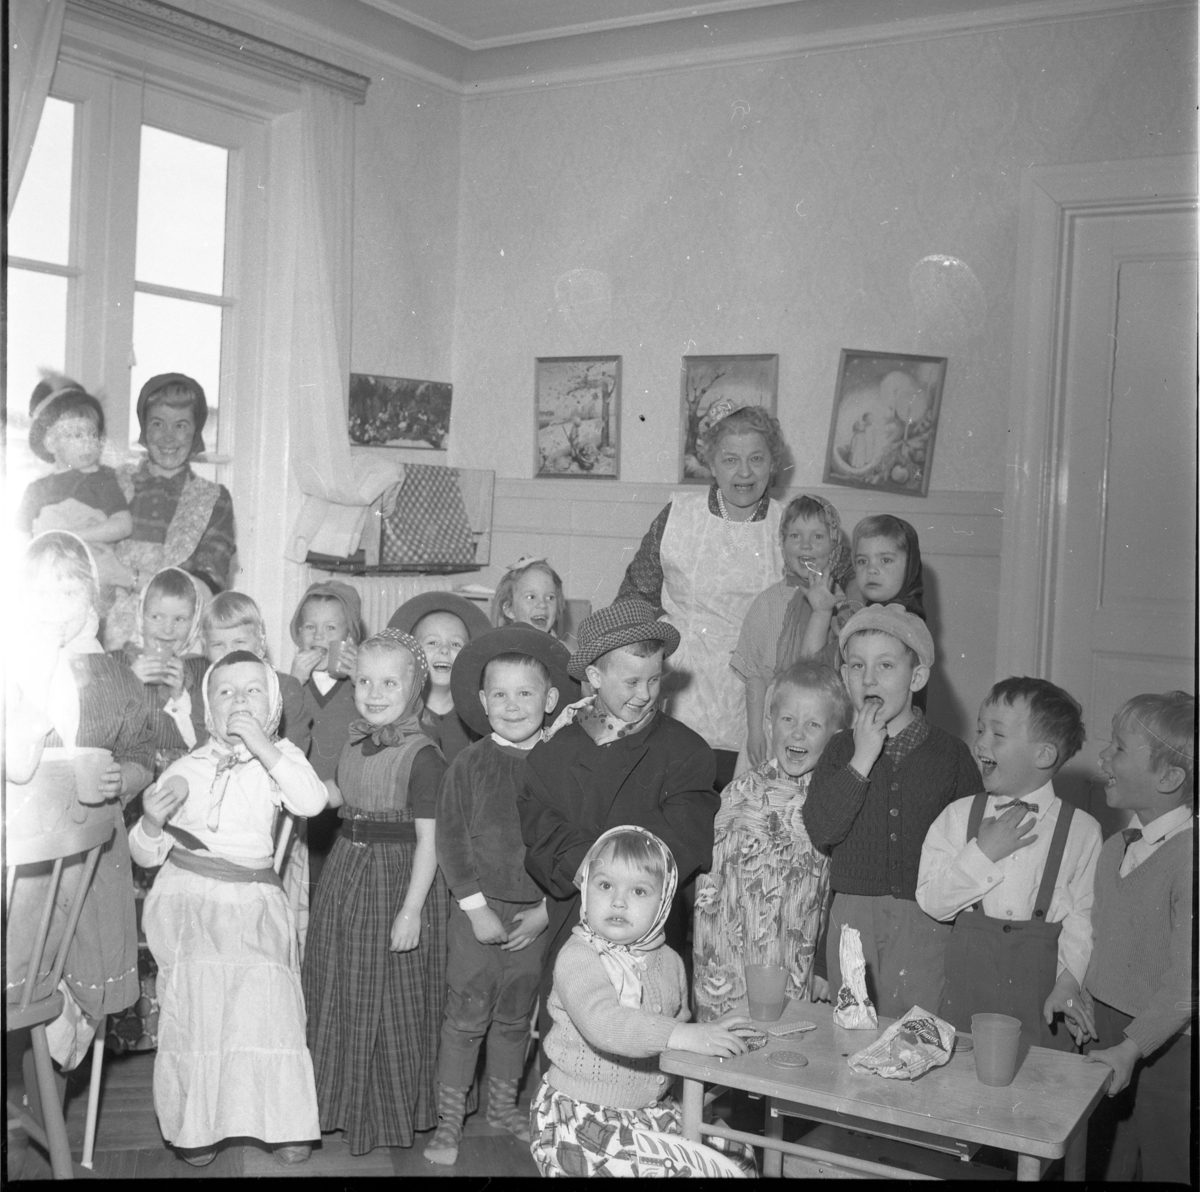 Lekskolan i Gränna 1963. Den äldre kvinnan i ljust förkläde är Anna-Lisa "Nalle" Lundin. Okända maskeradklädda barn, möjligen påsktid.